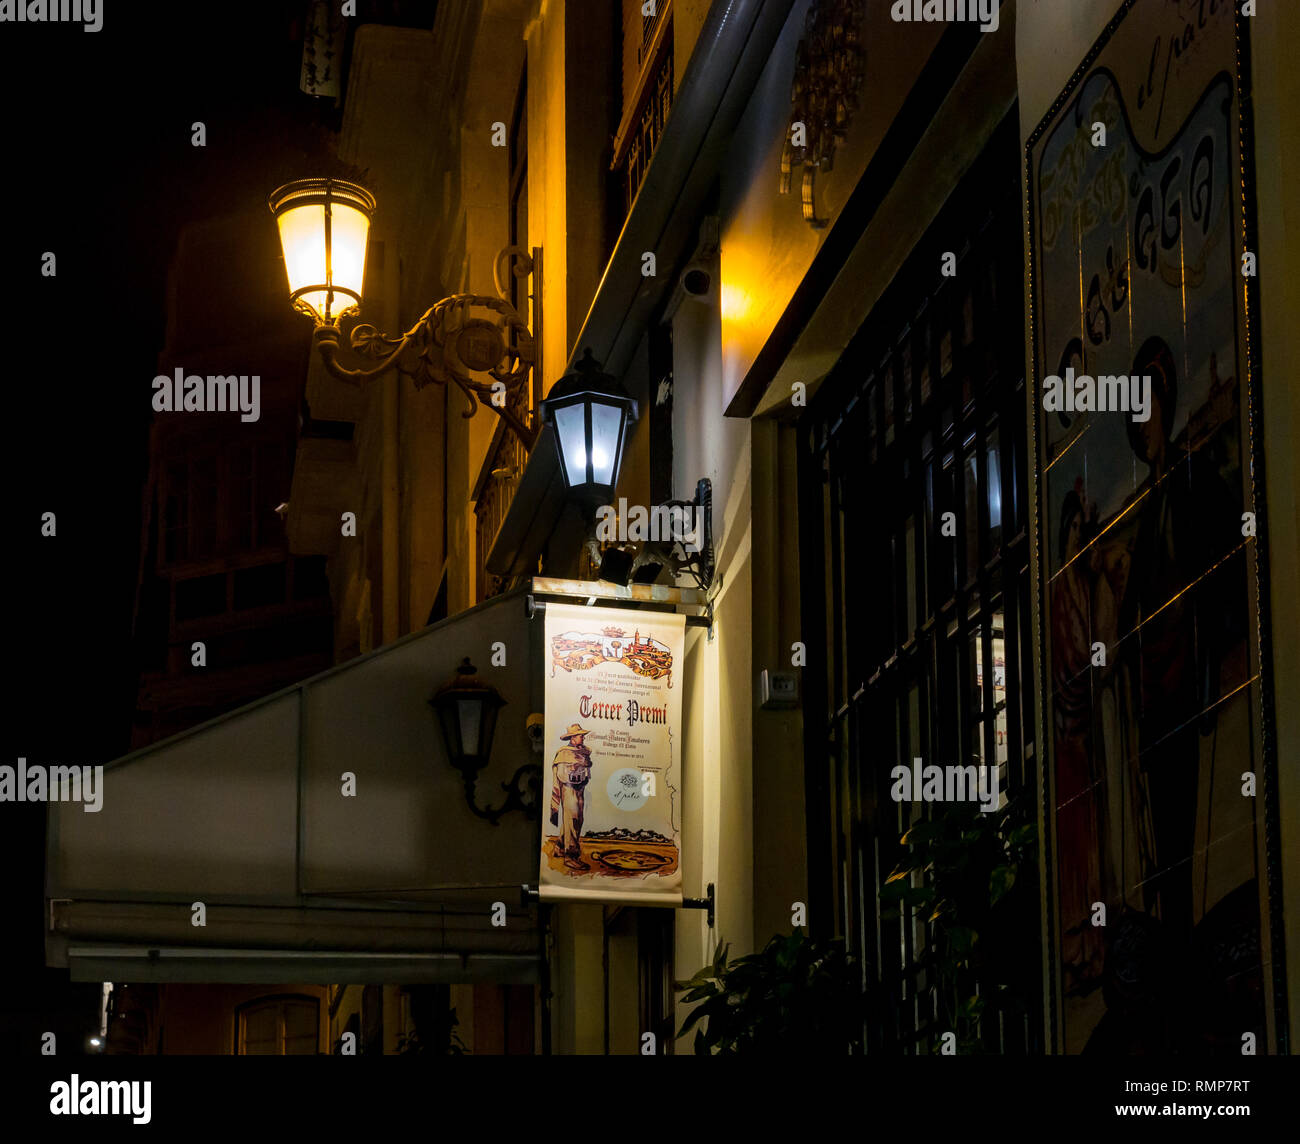 Hängeschild, alte Straßenlaternen und buntes Mosaik Fliesen- Zeichen, Bodega El Patio Restaurant bei Nacht Altstadt, Malaga, Andalusien, Spanien Stockfoto